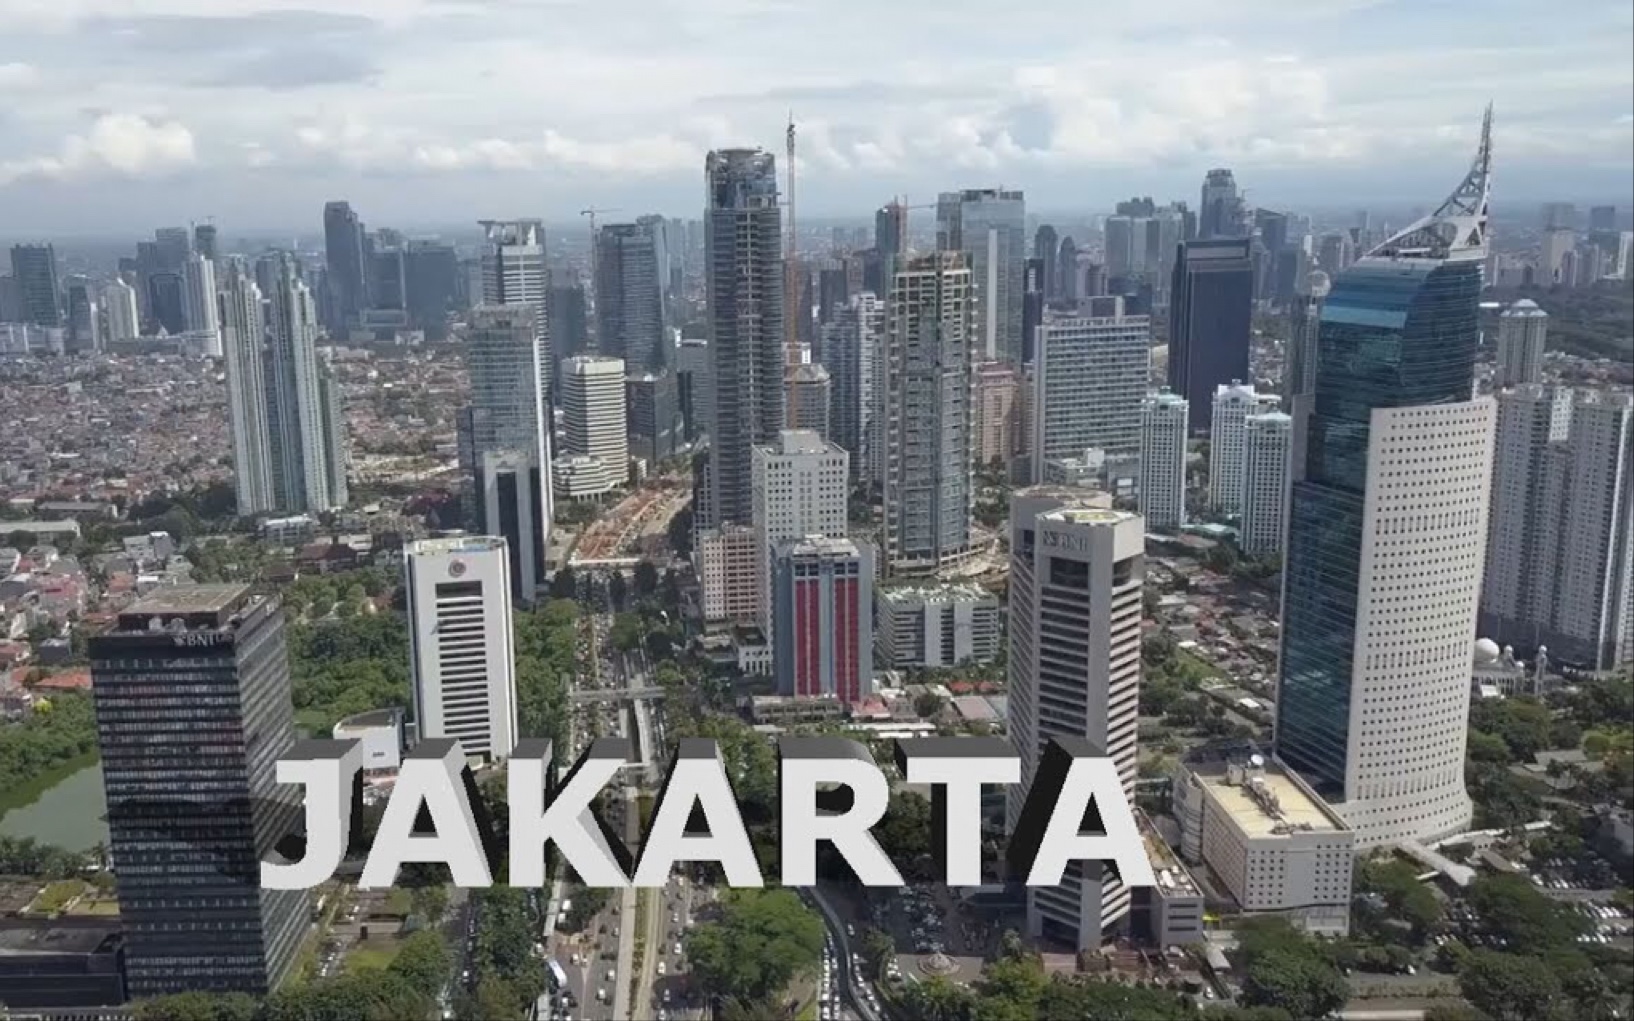 【航拍】 印度尼西亚 雅加达 2018即将举办亚运会城市